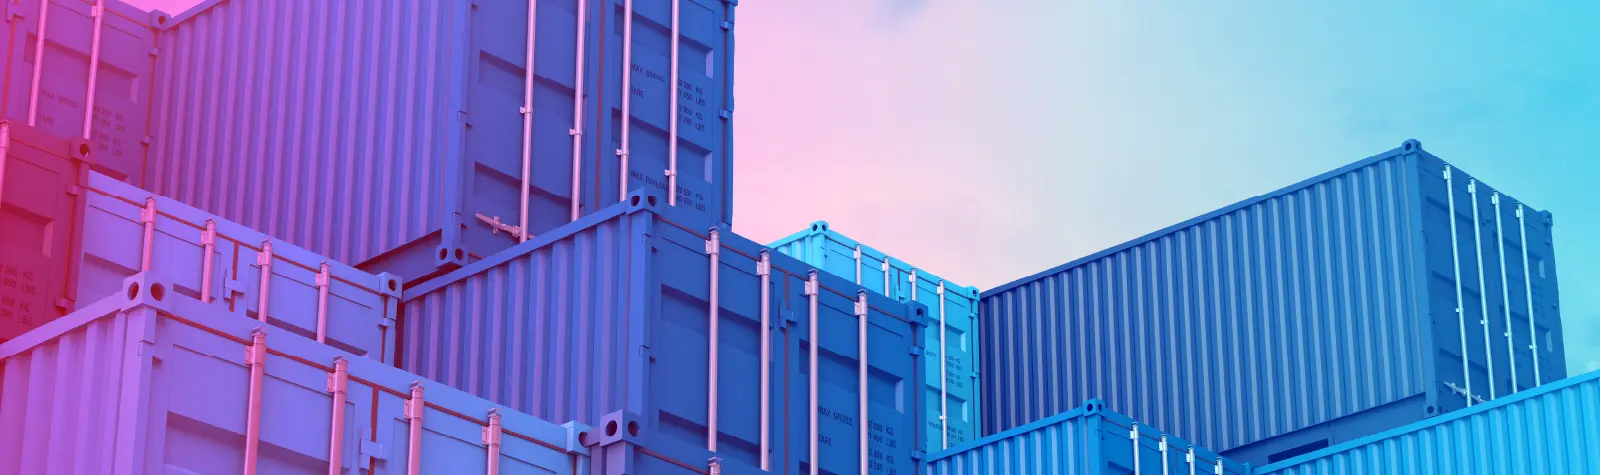 Containers que representam a logística e controle para transportadoras